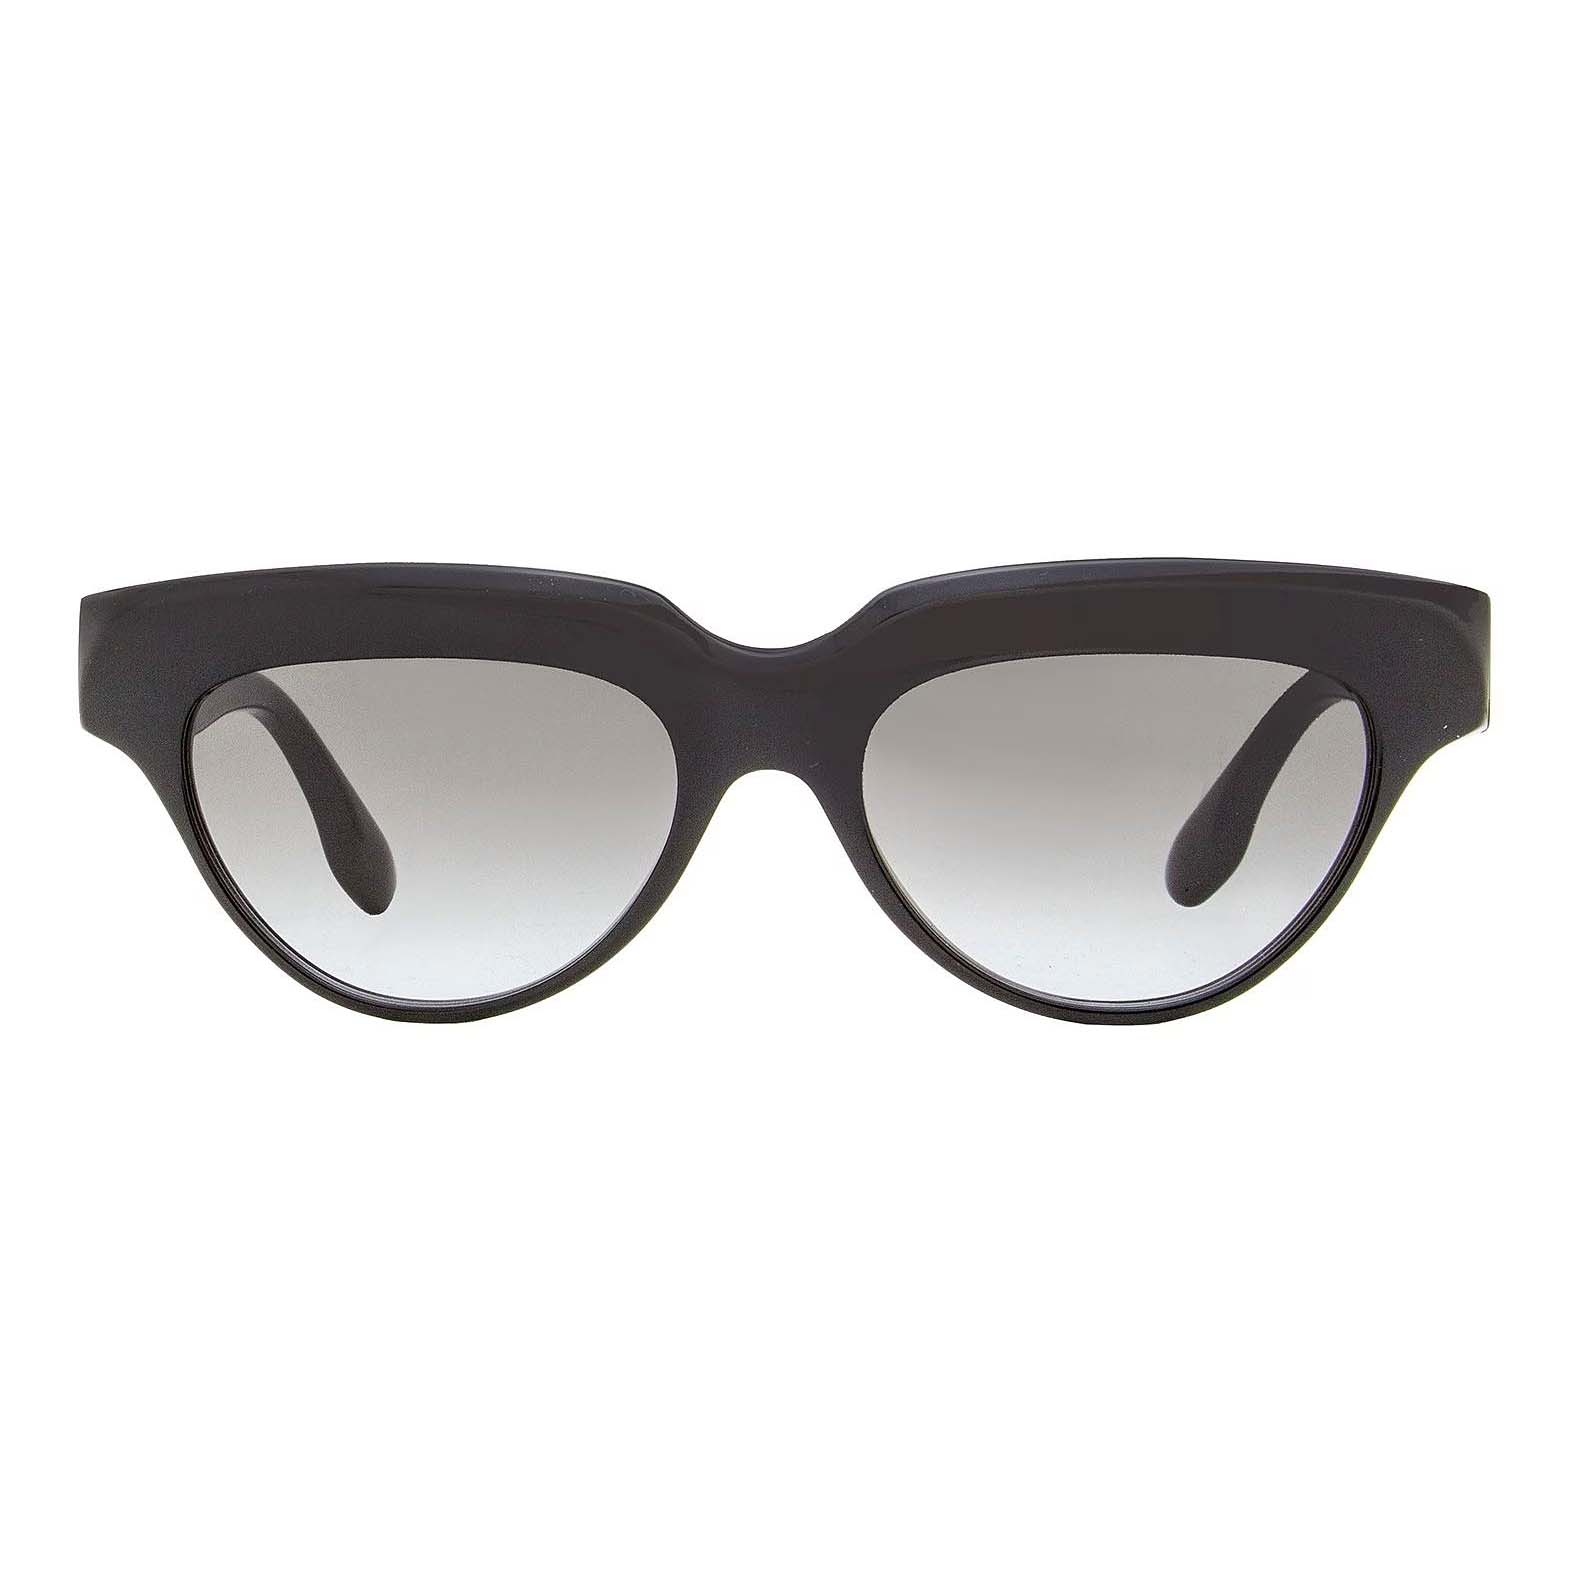 Солнцезащитные очки Victoria Beckham Cateye VB602S, черный солнцезащитные очки tropical кошачий глаз оправа металл градиентные для женщин золотой